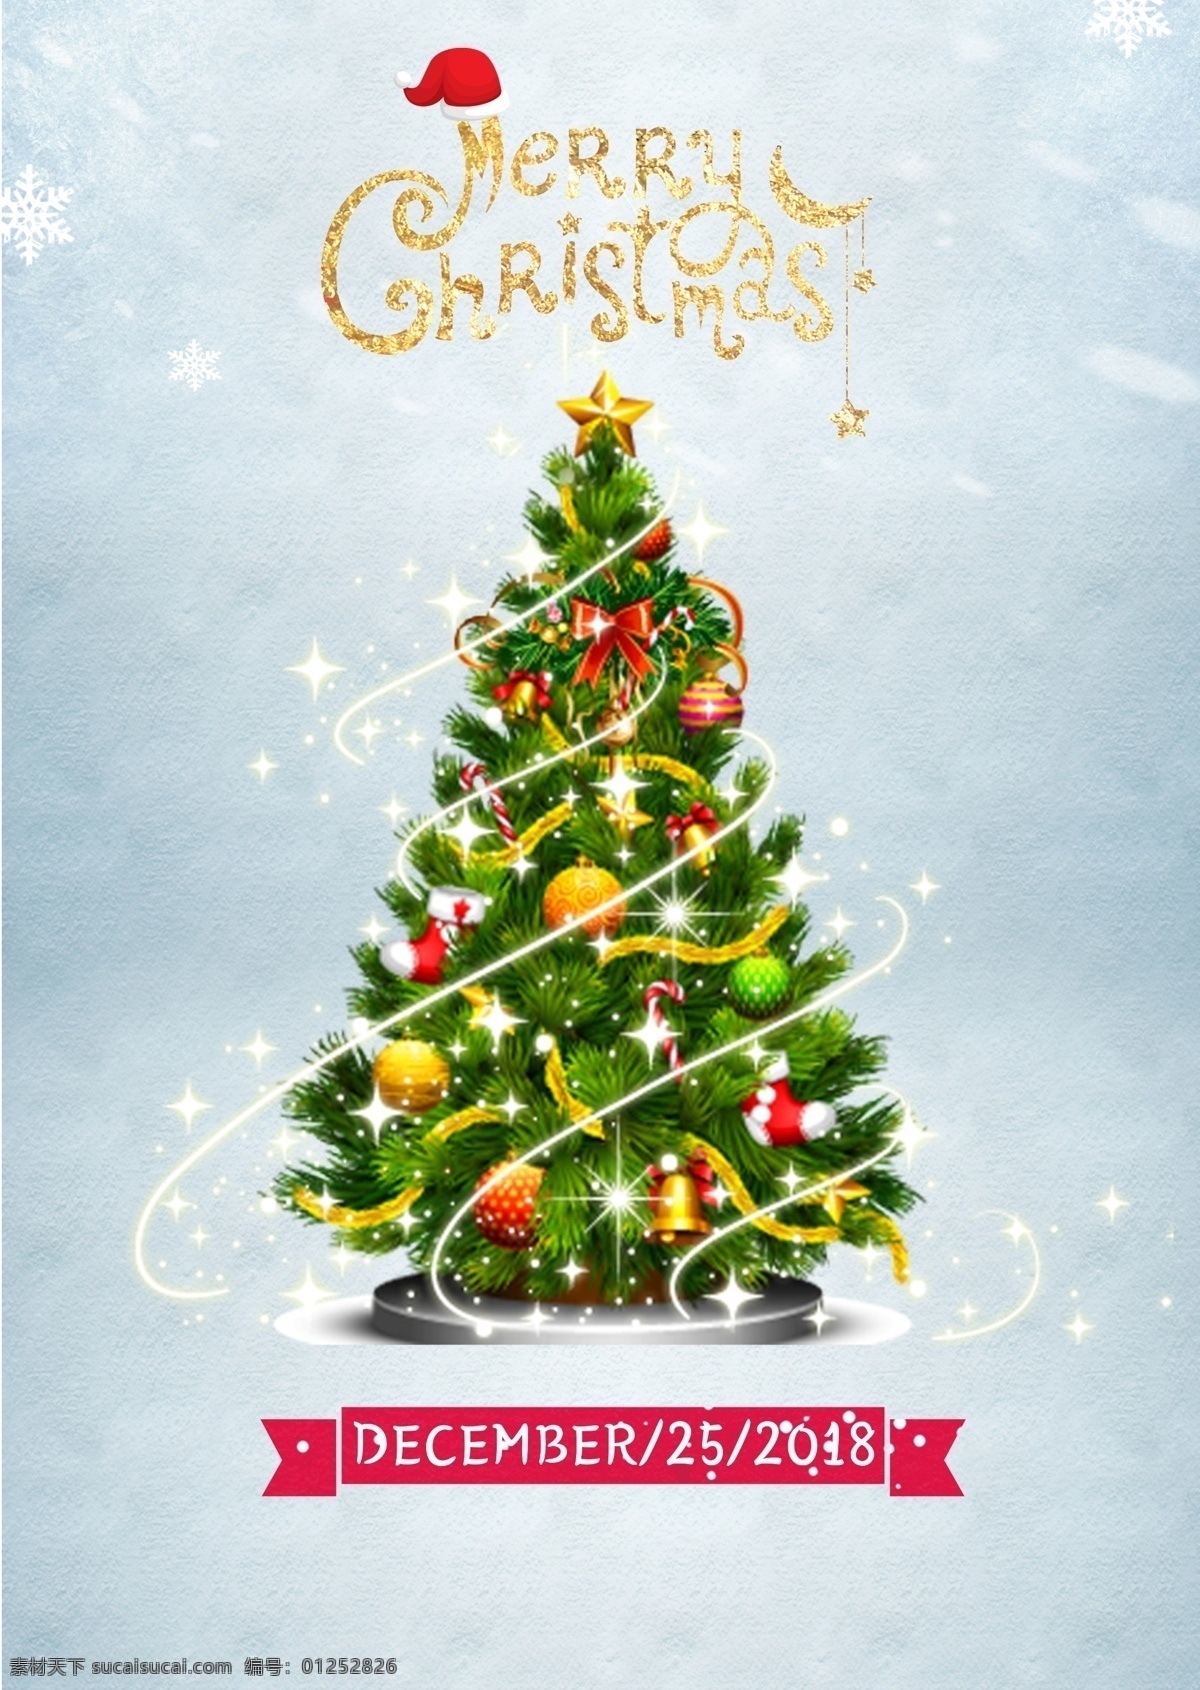 2018 年 蓝色 海报 肝脏药物 弓 雪 月亮 祝你圣诞快乐 钟 彩带 糖果 圣诞帽子 圣诞袜 在平安夜 圣诞树 模板 时尚 金 圣诞球